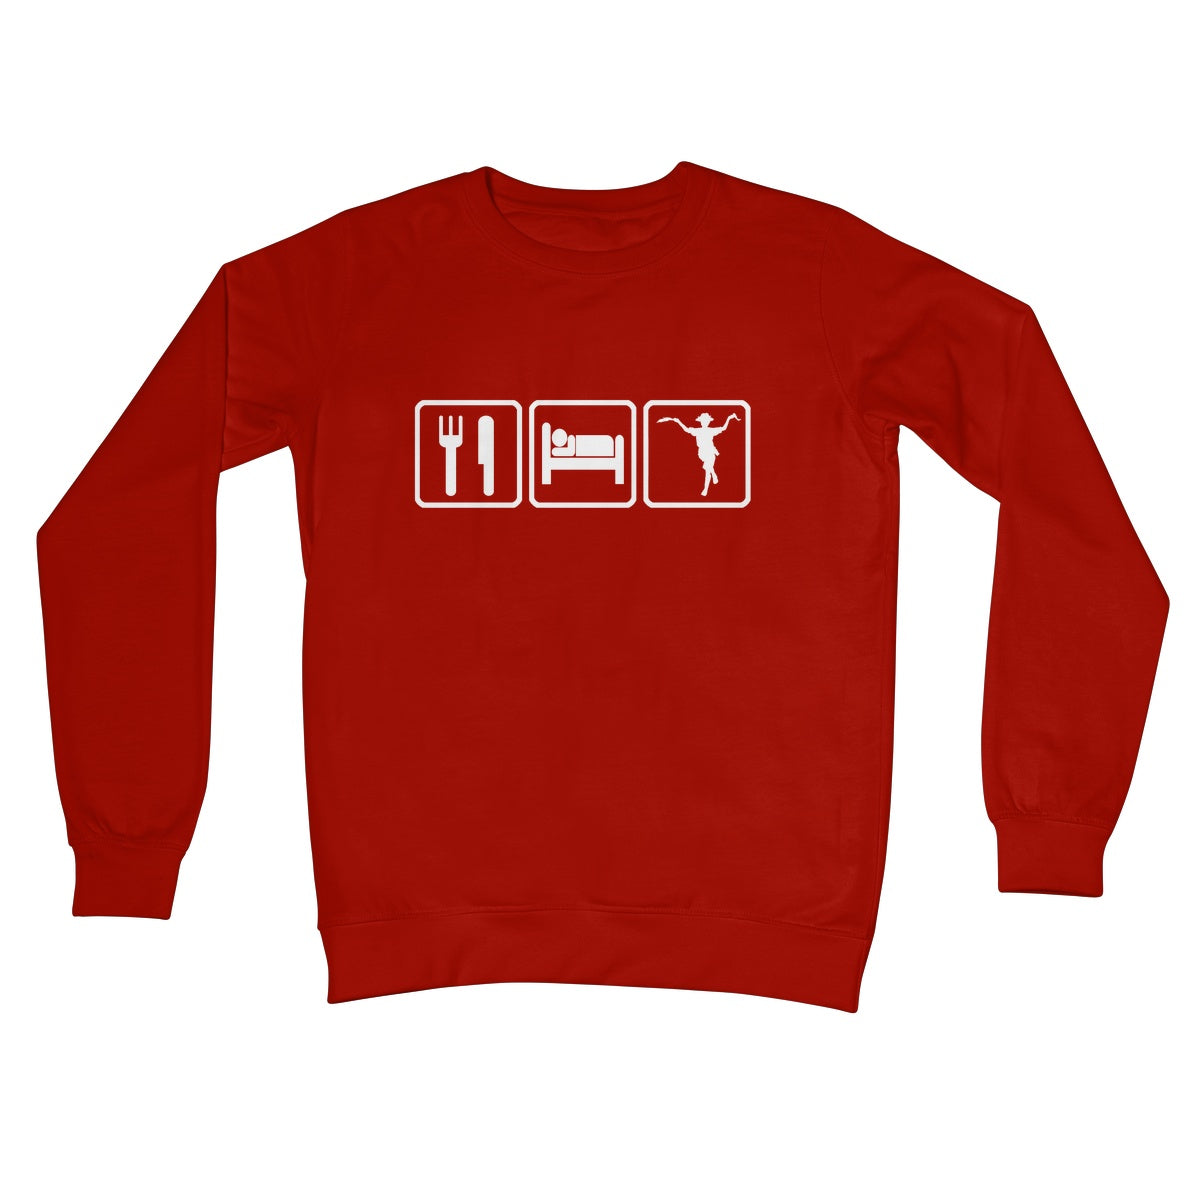 Eat Sleep & Morris Dance Sweatshirt